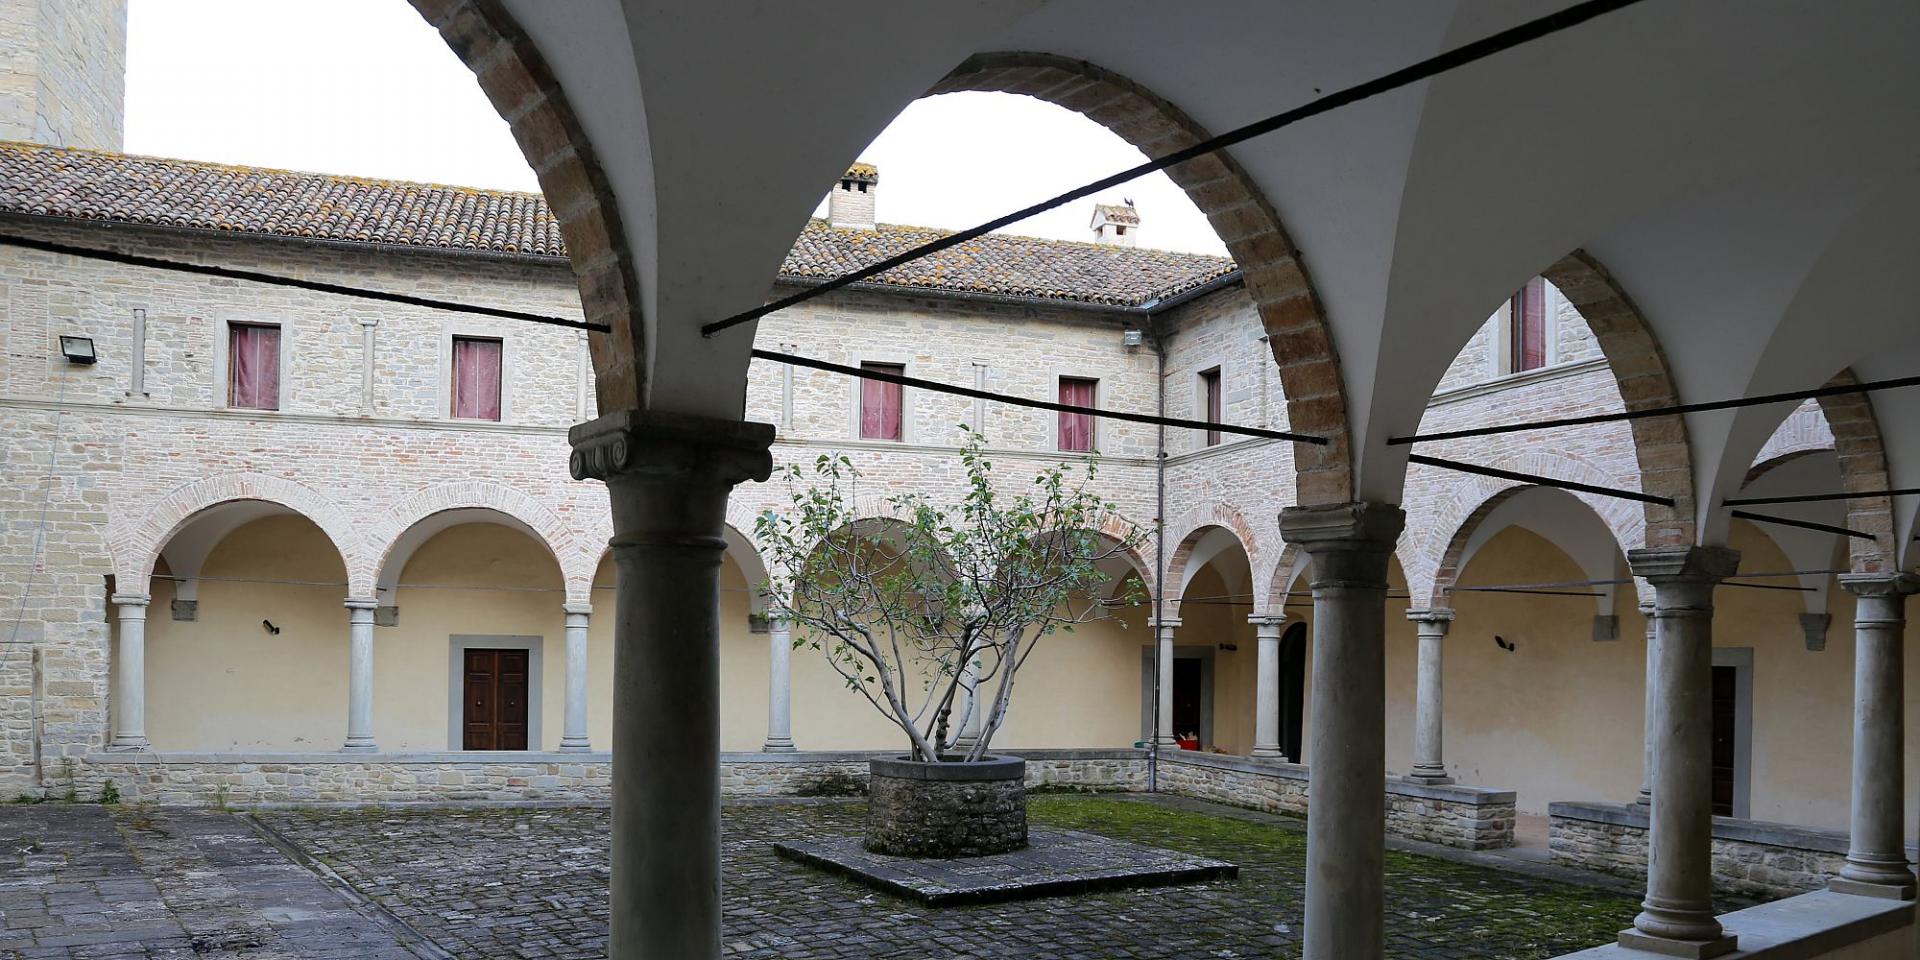 Convento dei Padri Minori di Pianetto, Galeata foto di sailko